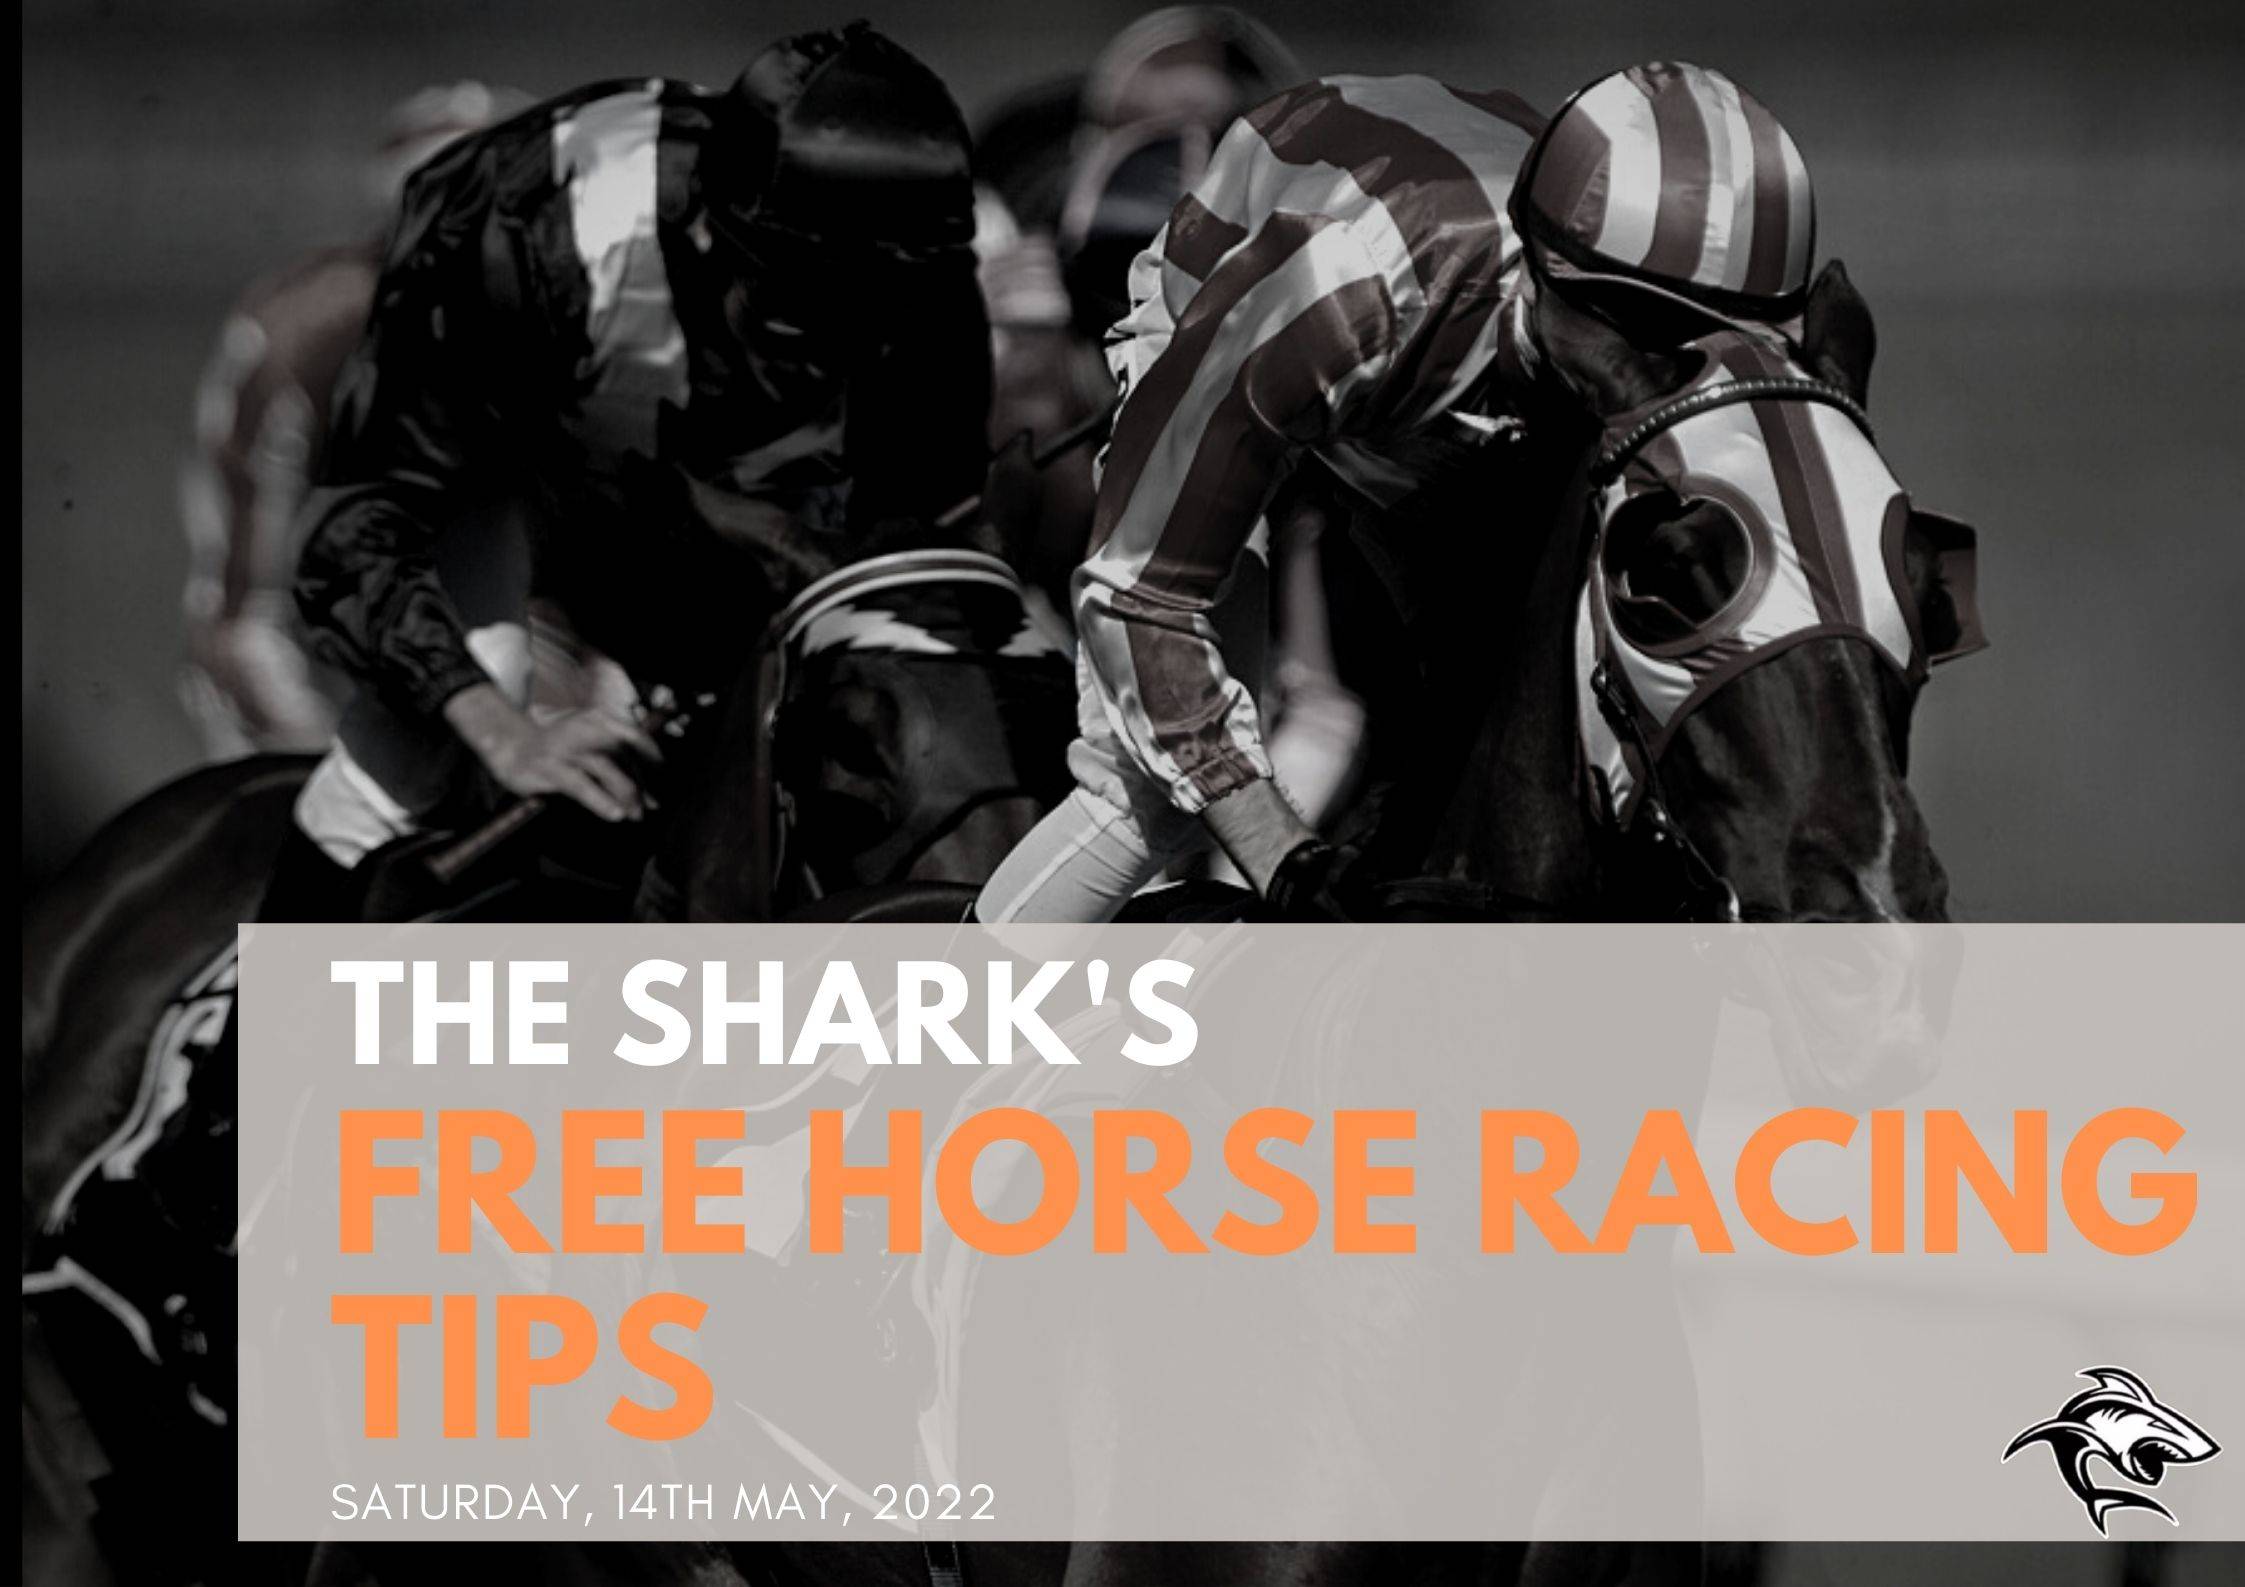 Free Horse Racing Tips - 14th May